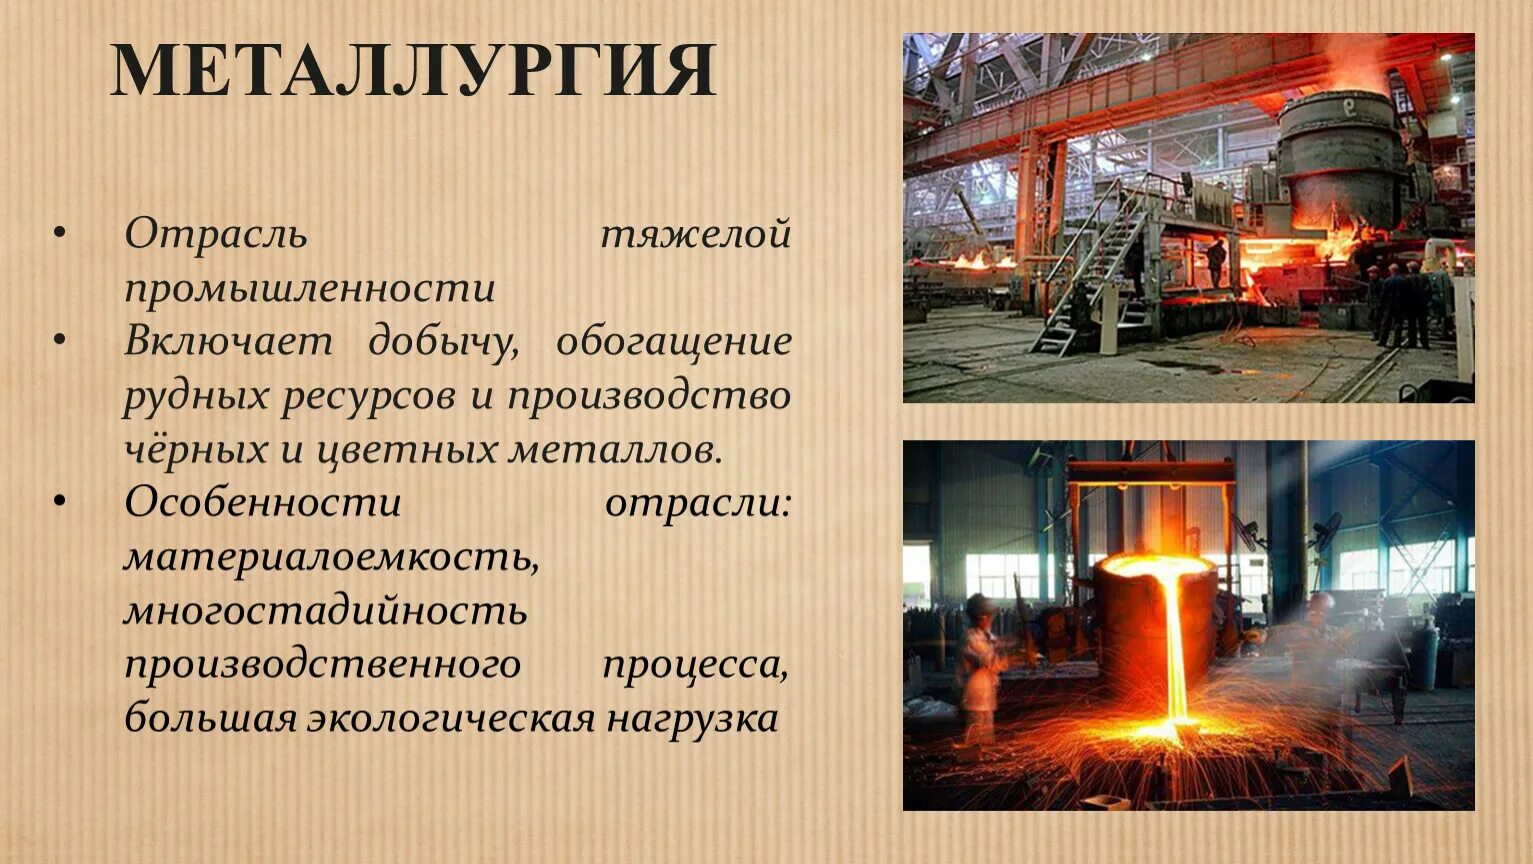 Основные металлы в промышленности. Металлургия. Металлургия промышленность. Отрасли металлургии. Металлургия отрасль промышленности.